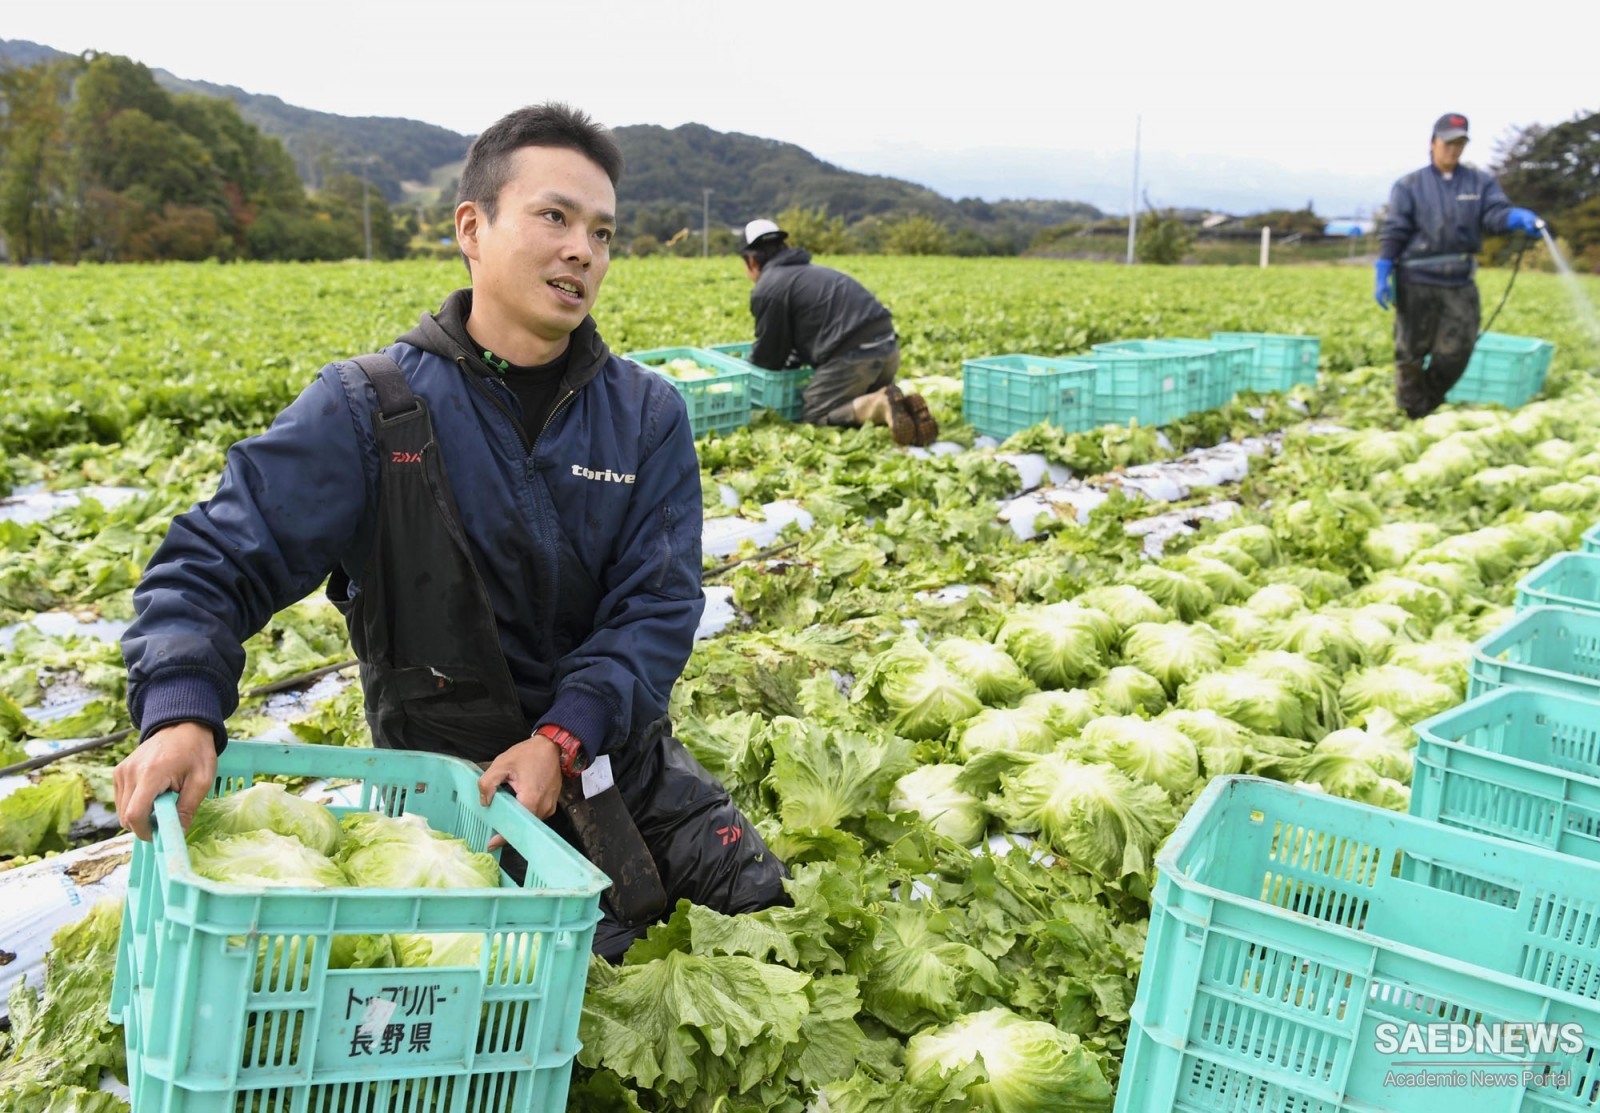 Japanese Beauty Shines Even in Lettuce Farm